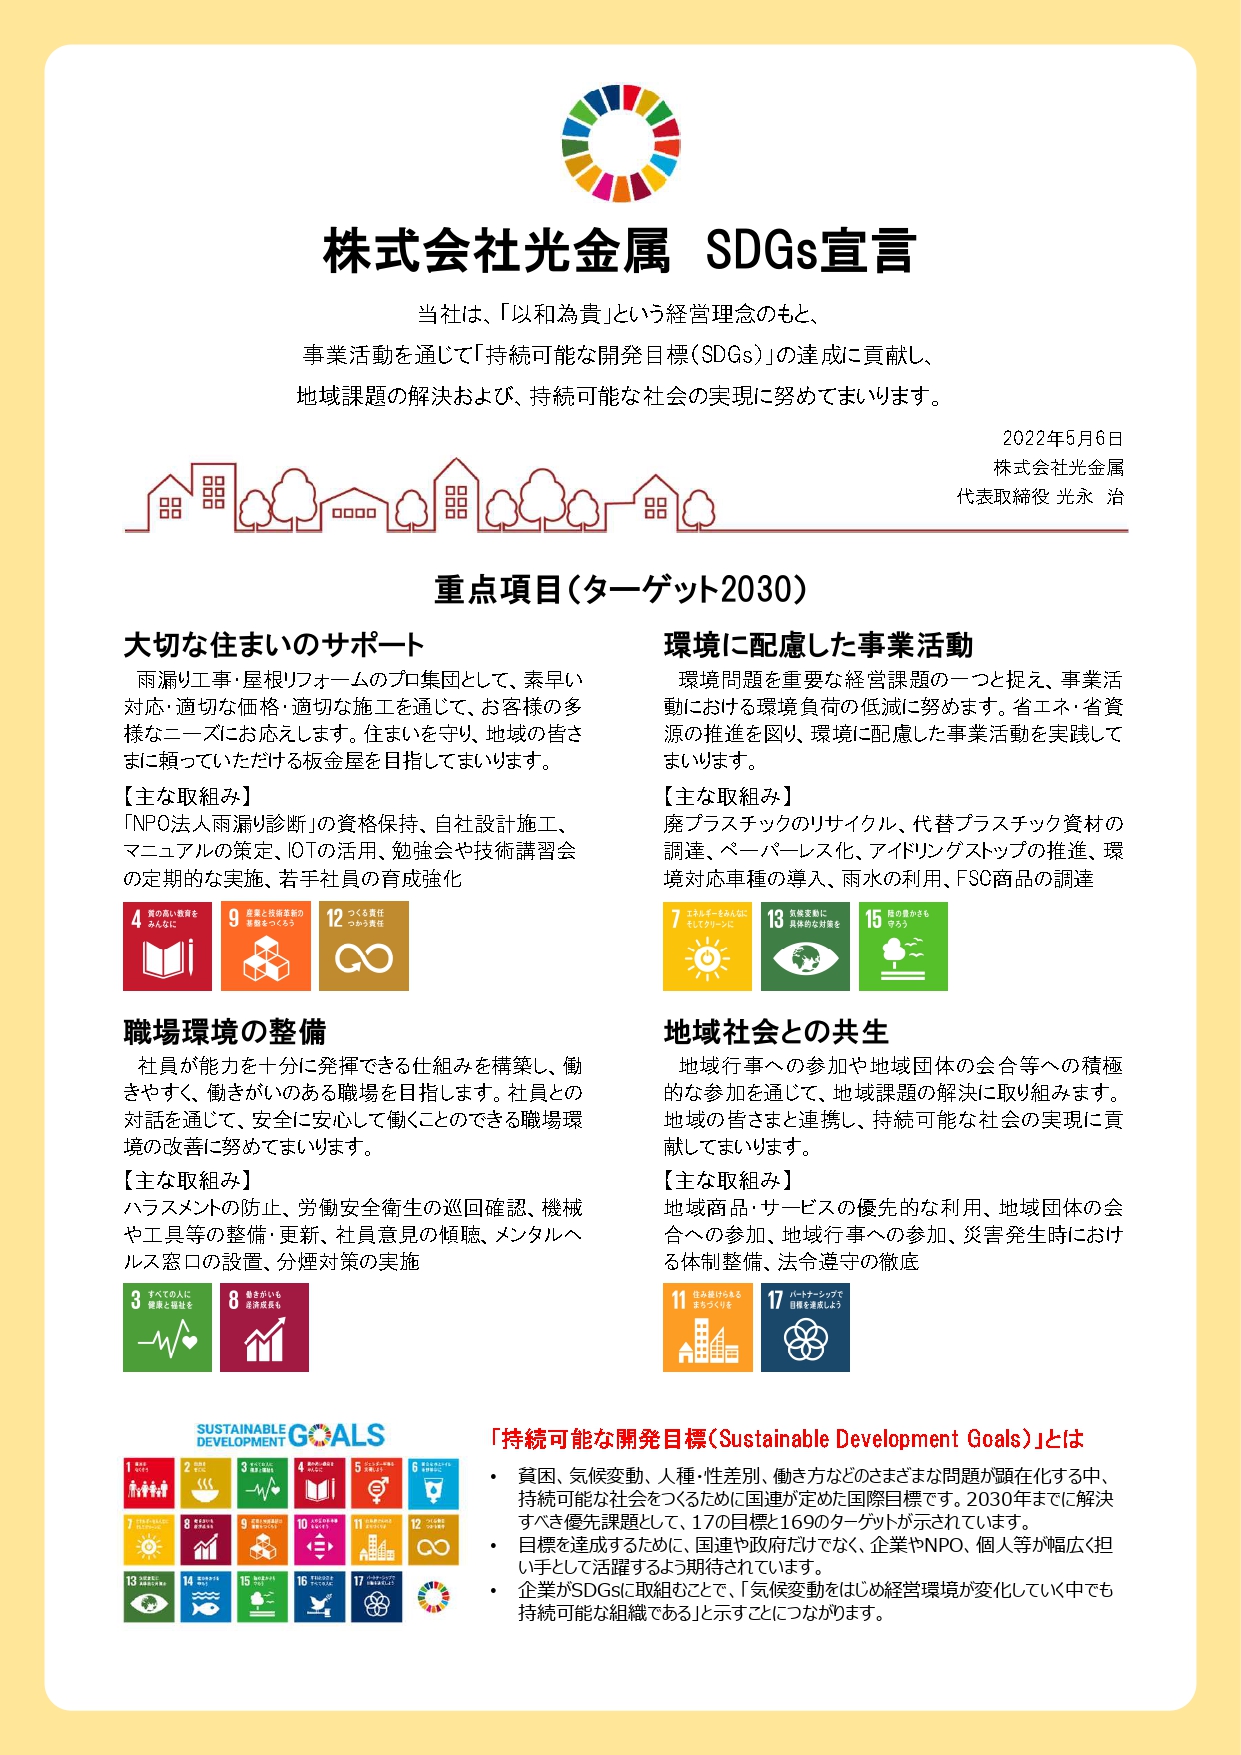 株式会社光金属 SDGs宣言